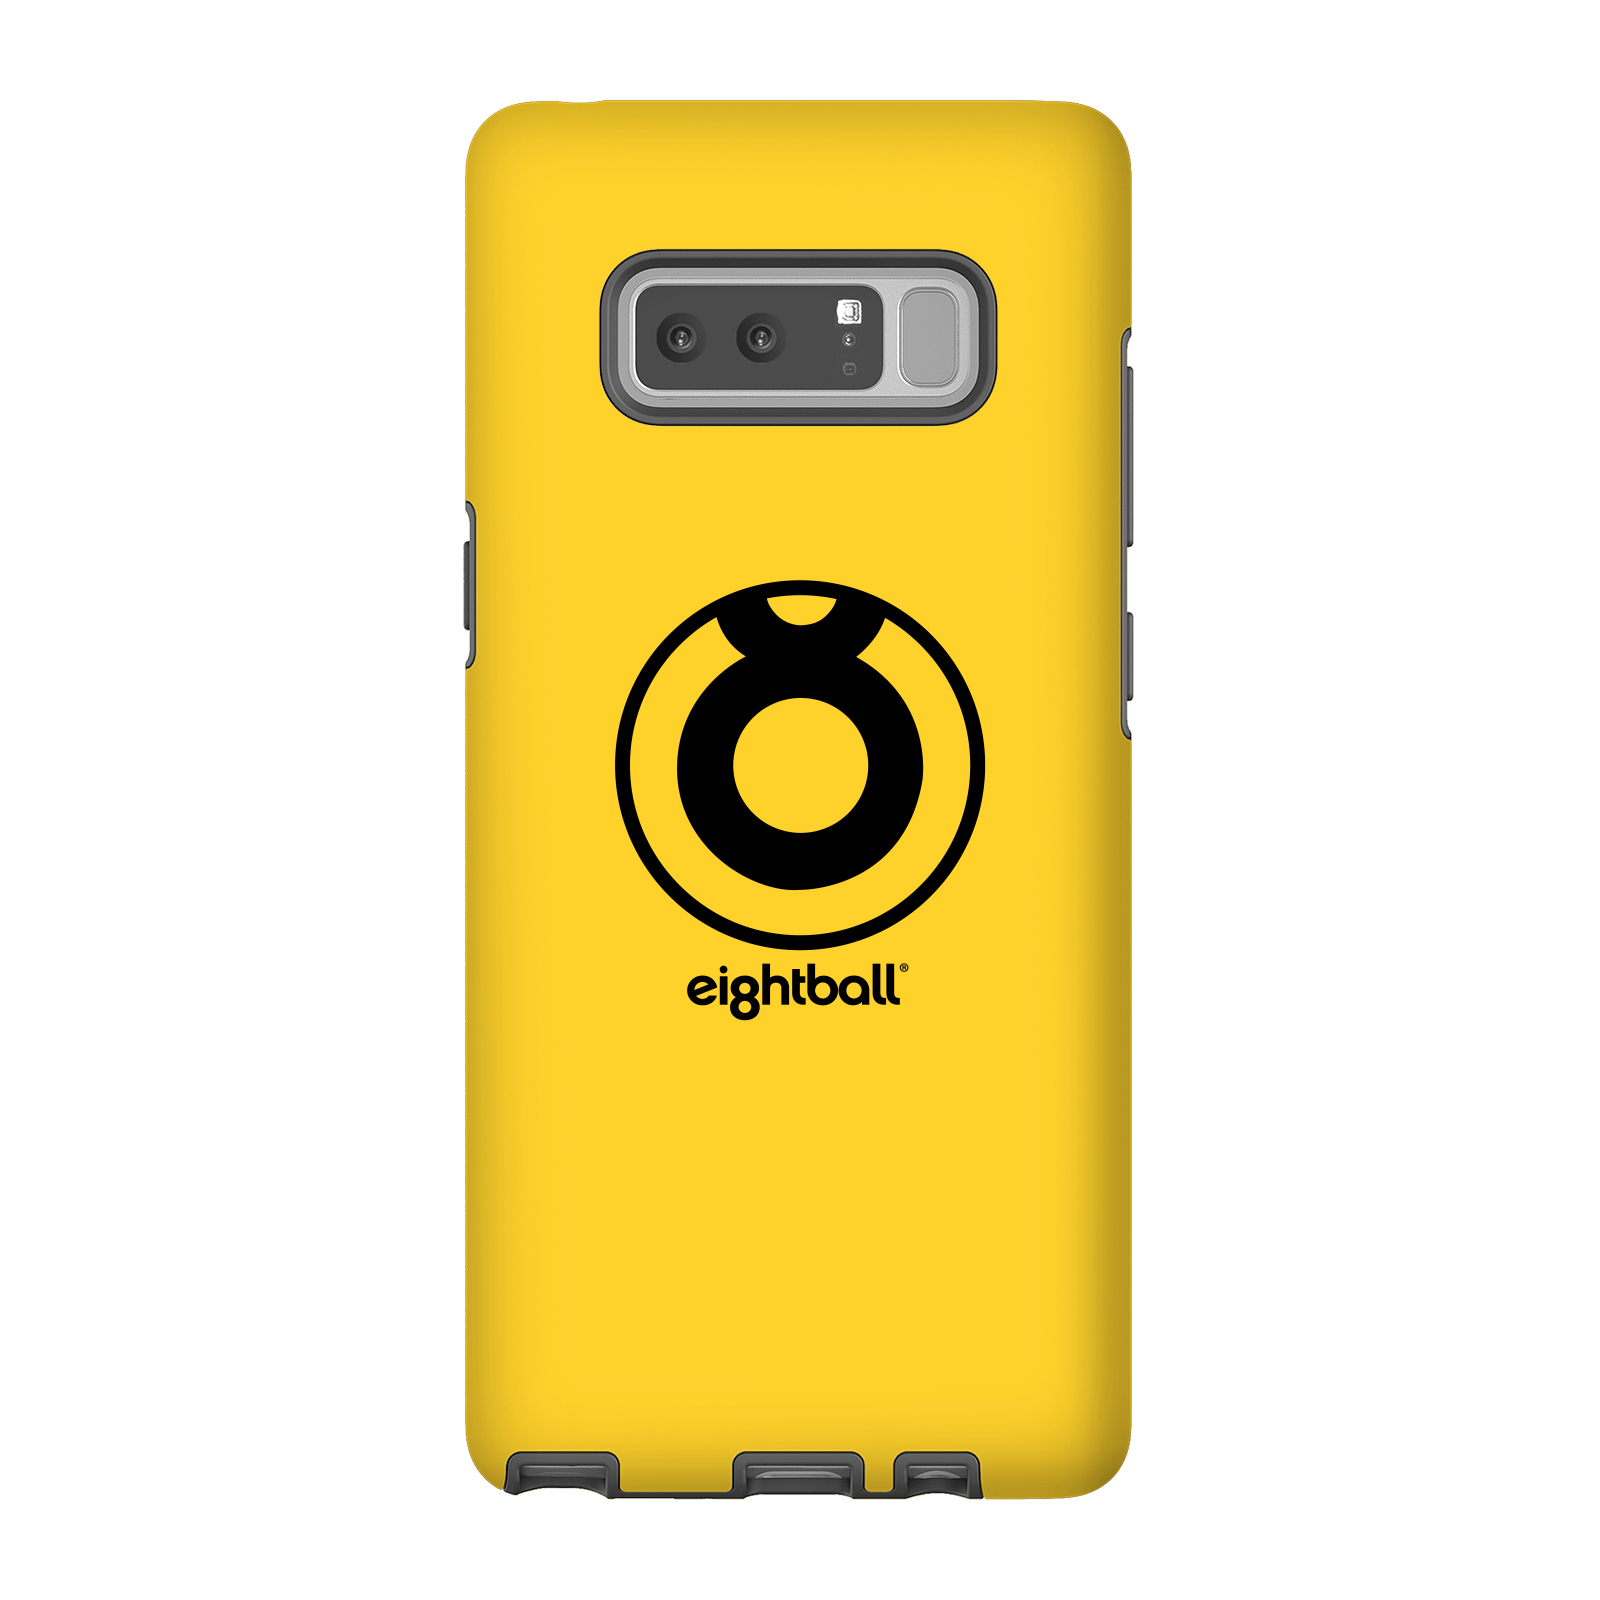 Funda Móvil Ei8htball Large Circle Logo para iPhone y Android - Samsung Note 8 - Carcasa doble capa - Mate